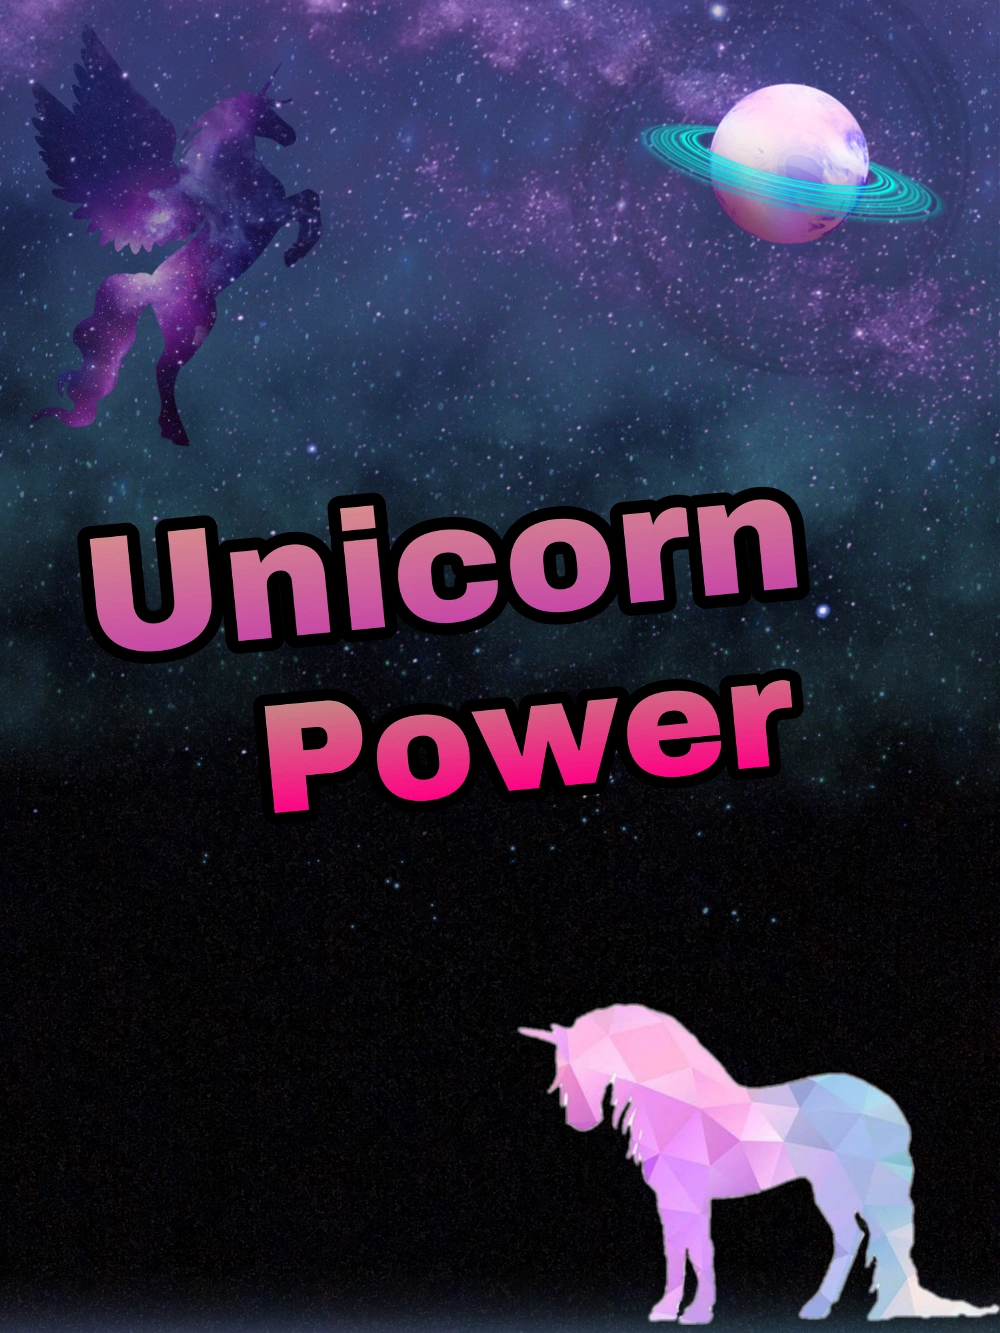 #freetoedit #unicorn #cute #galaxy